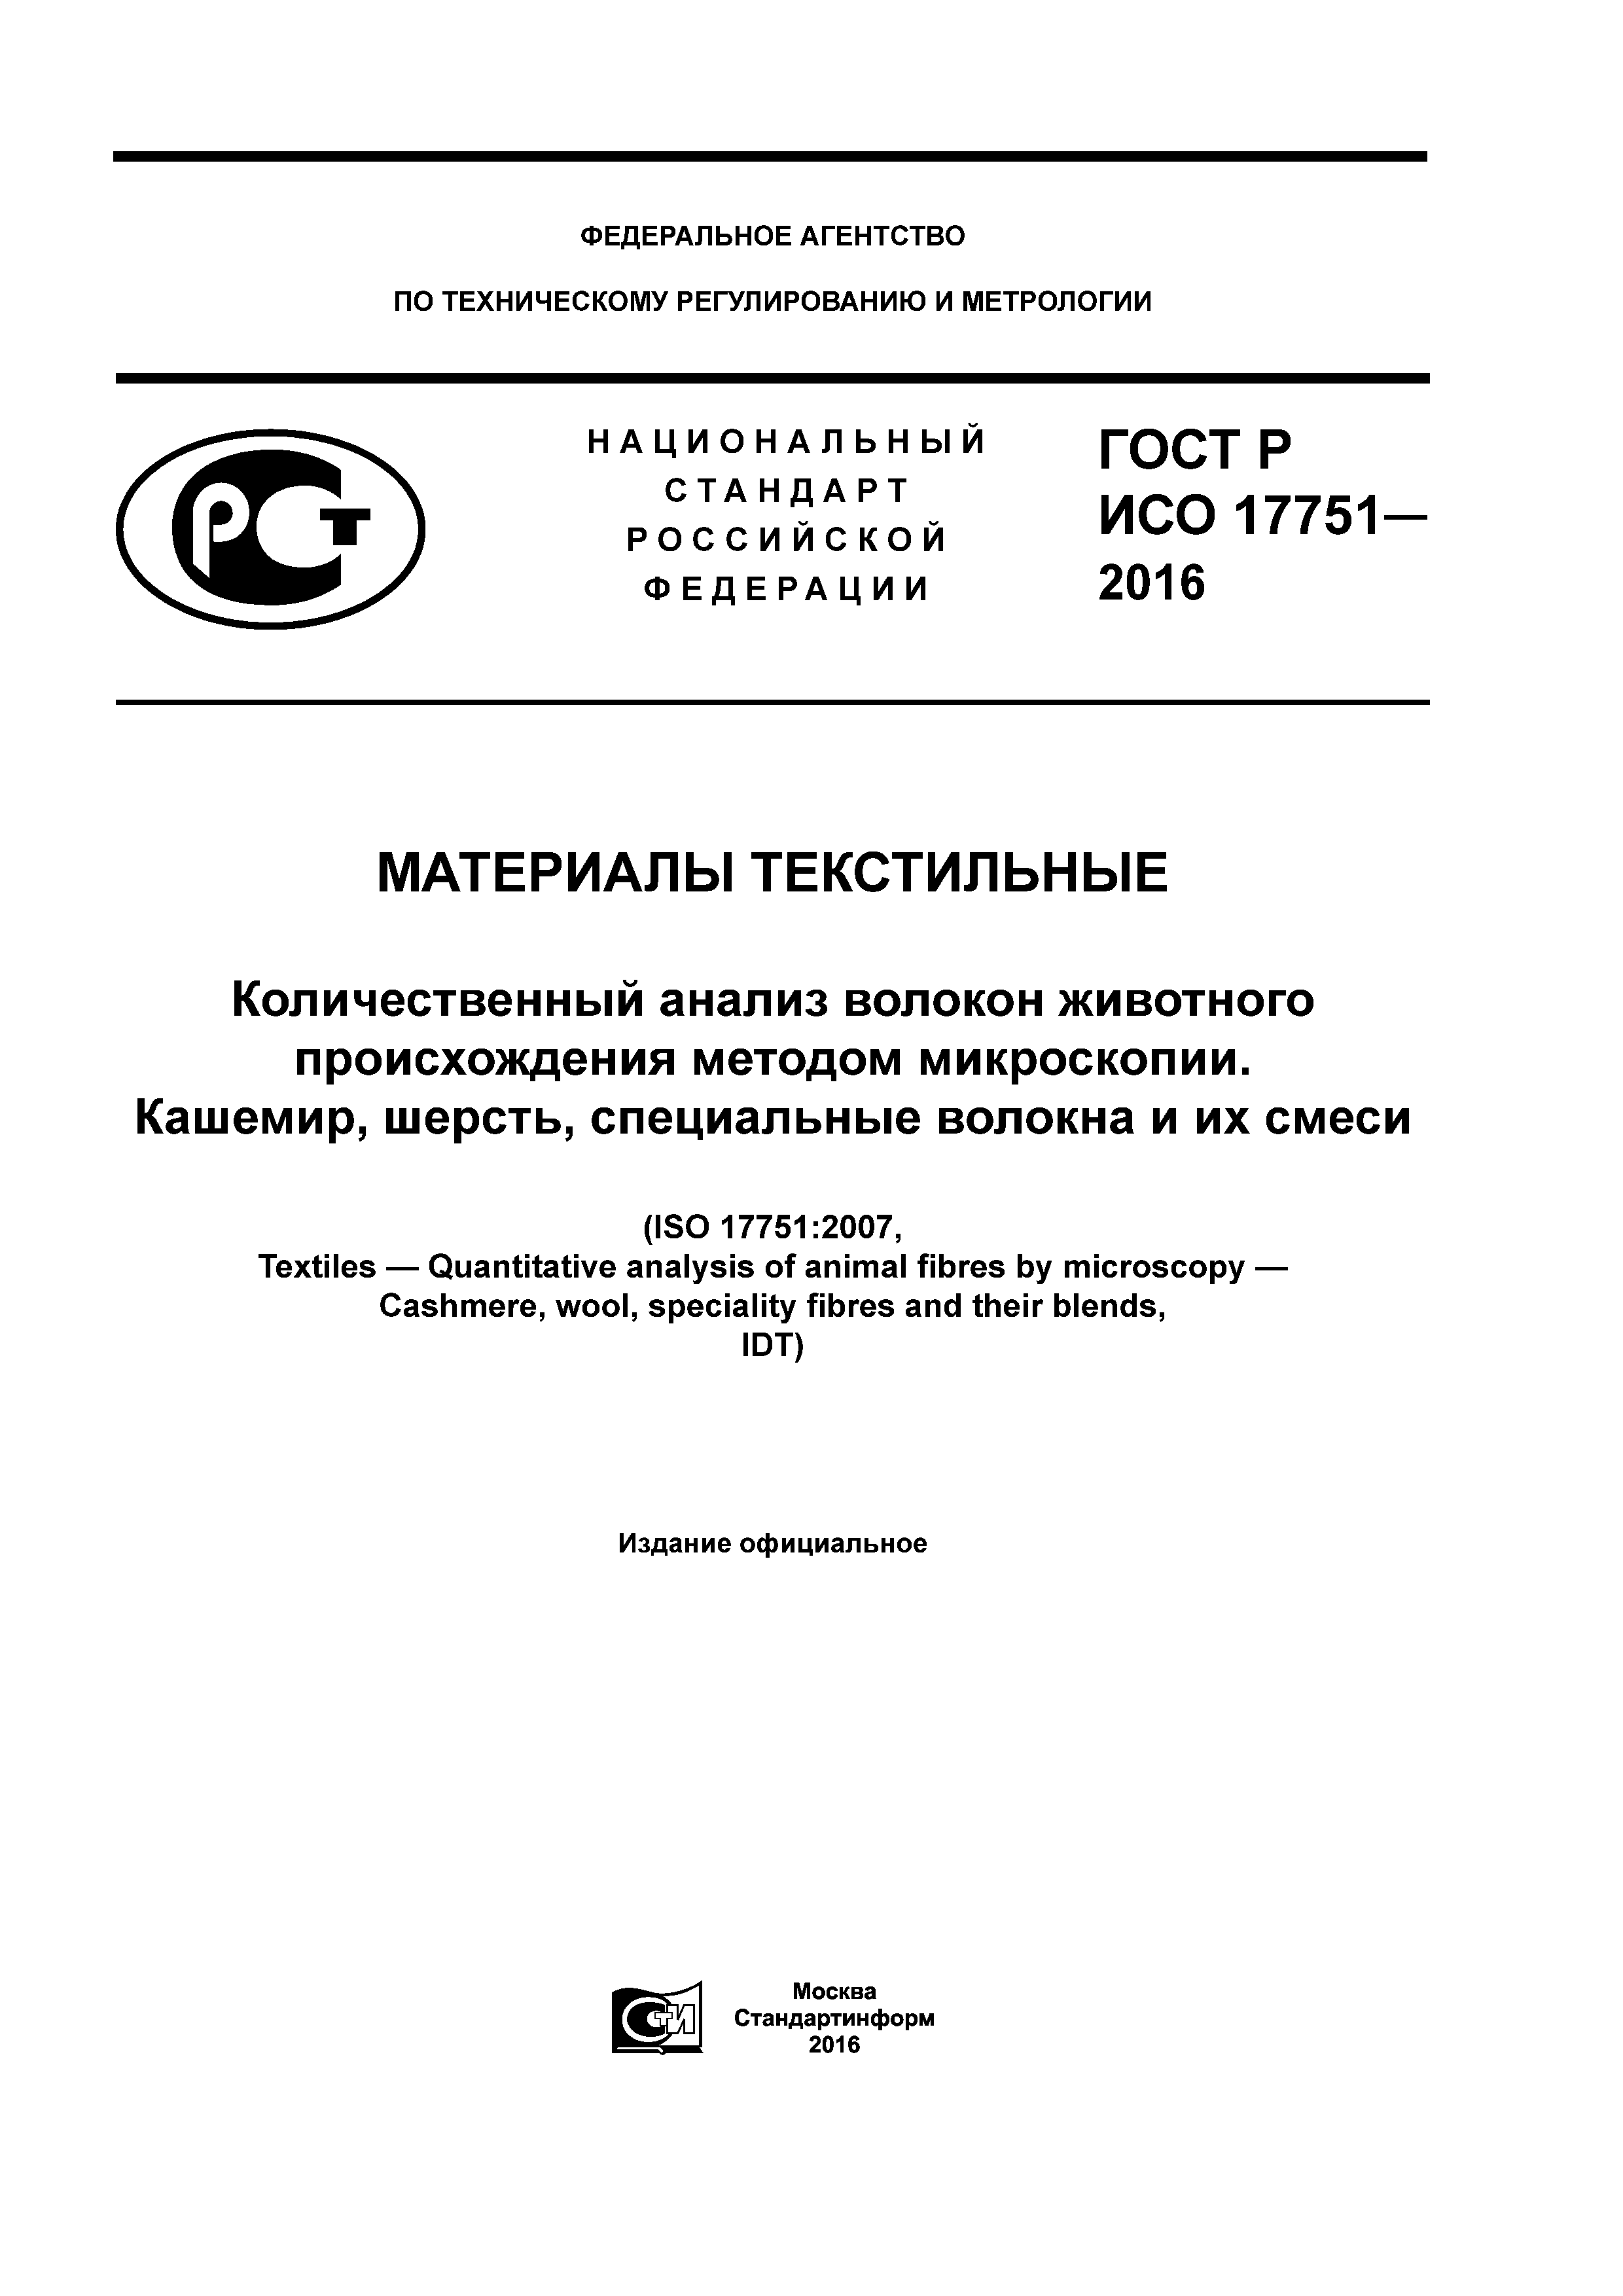 ГОСТ Р ИСО 17751-2016